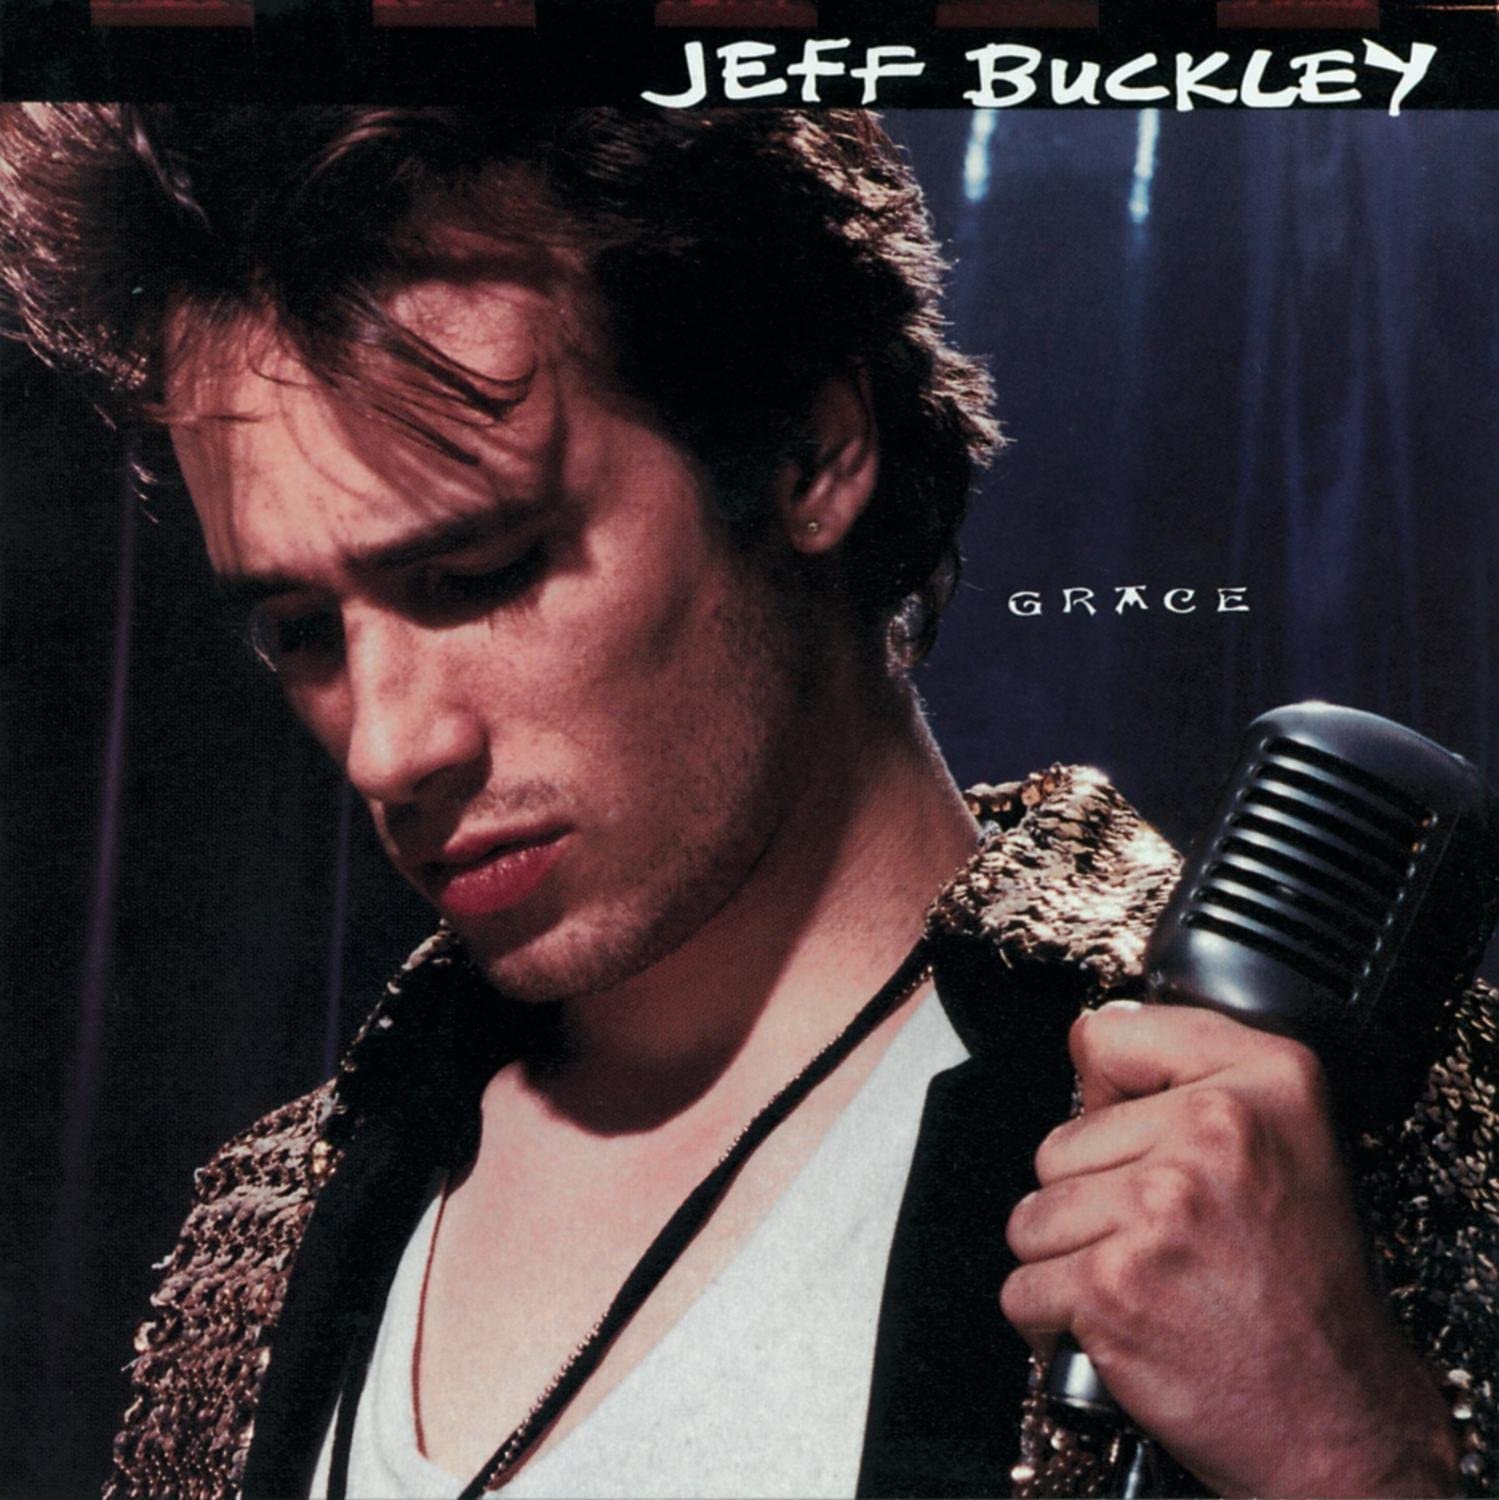 Jeff Buckley, ” Grace”